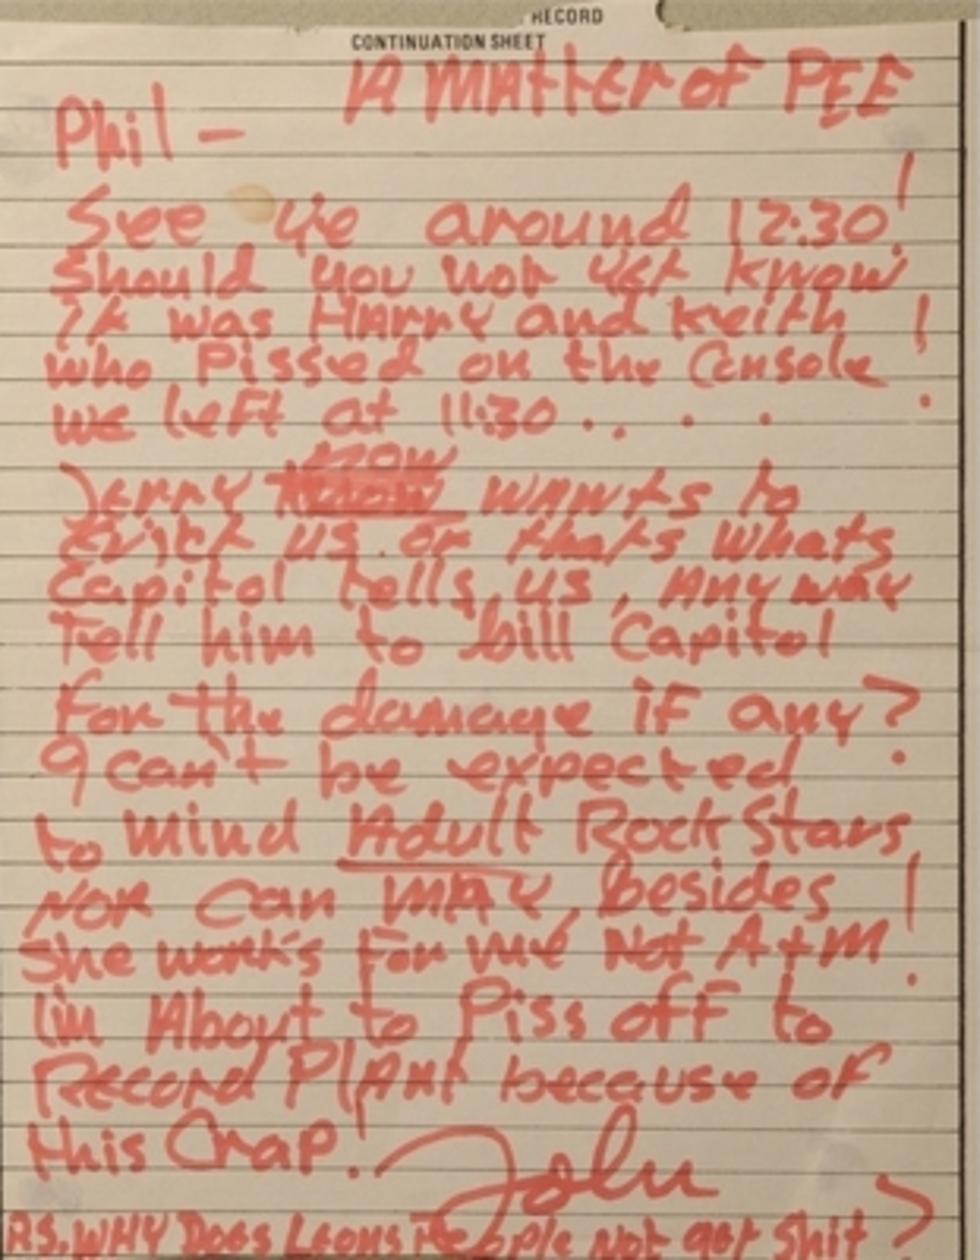 John Lennon Letter to Phil Spector Going Up For Auction